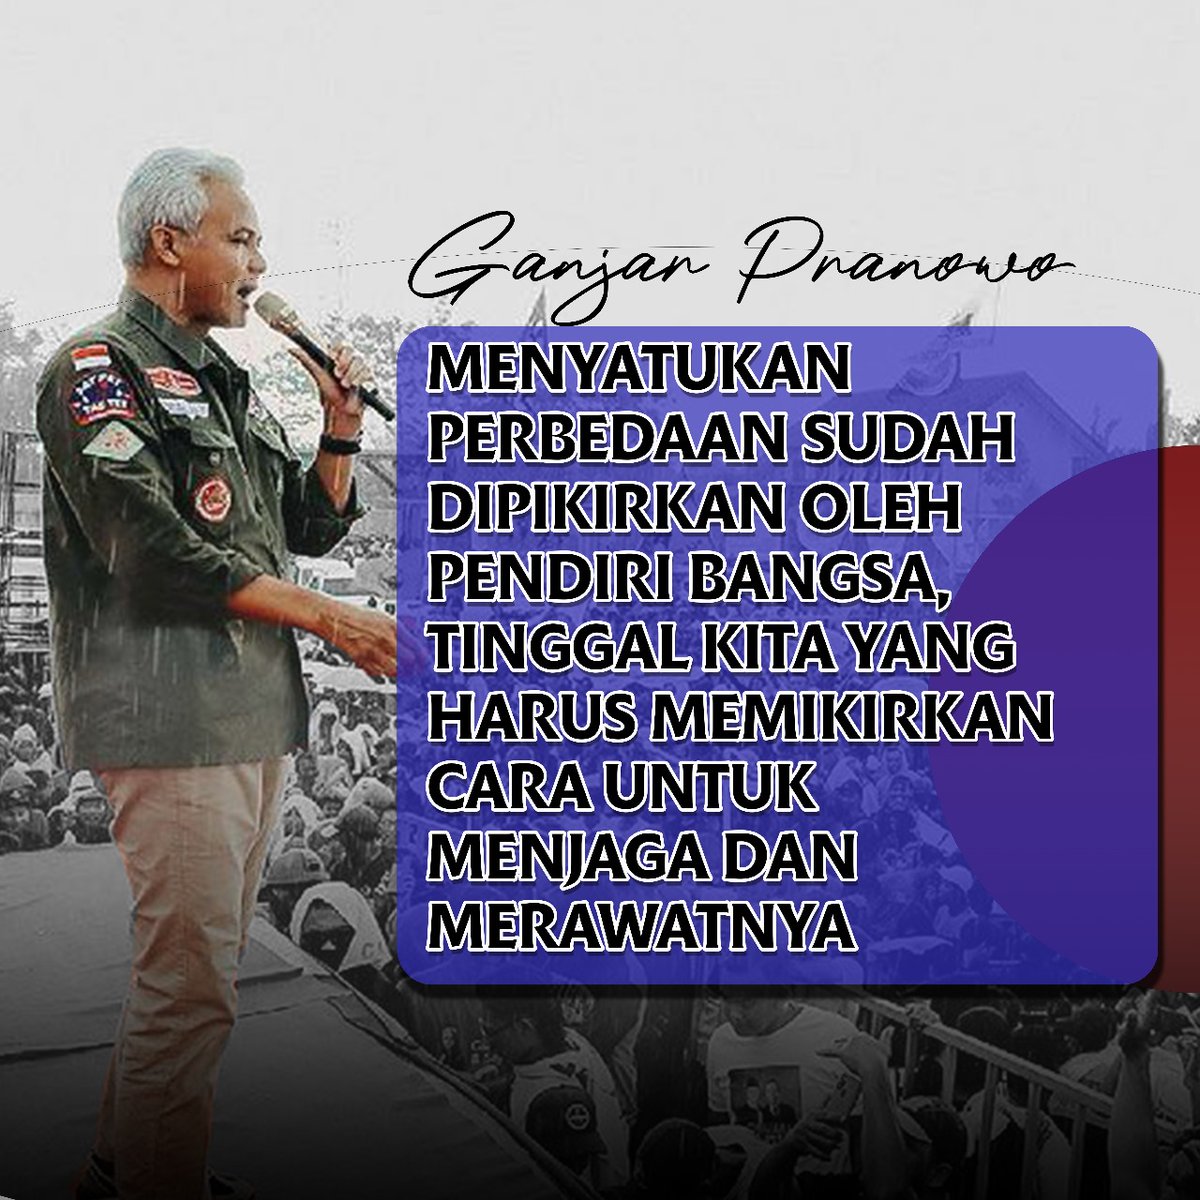 Masyarakat Jawa Tengah percaya bahwa Ganjar Pranowo adalah sosok yang mampu menjaga keberagaman dengan bijak dan adil. Kesejahteraan berlipat ganda, Indonesia Makmur Sentosa @dicklicieuse 
#KitaAdalahTiga
#BanggaBersamaGPMMD